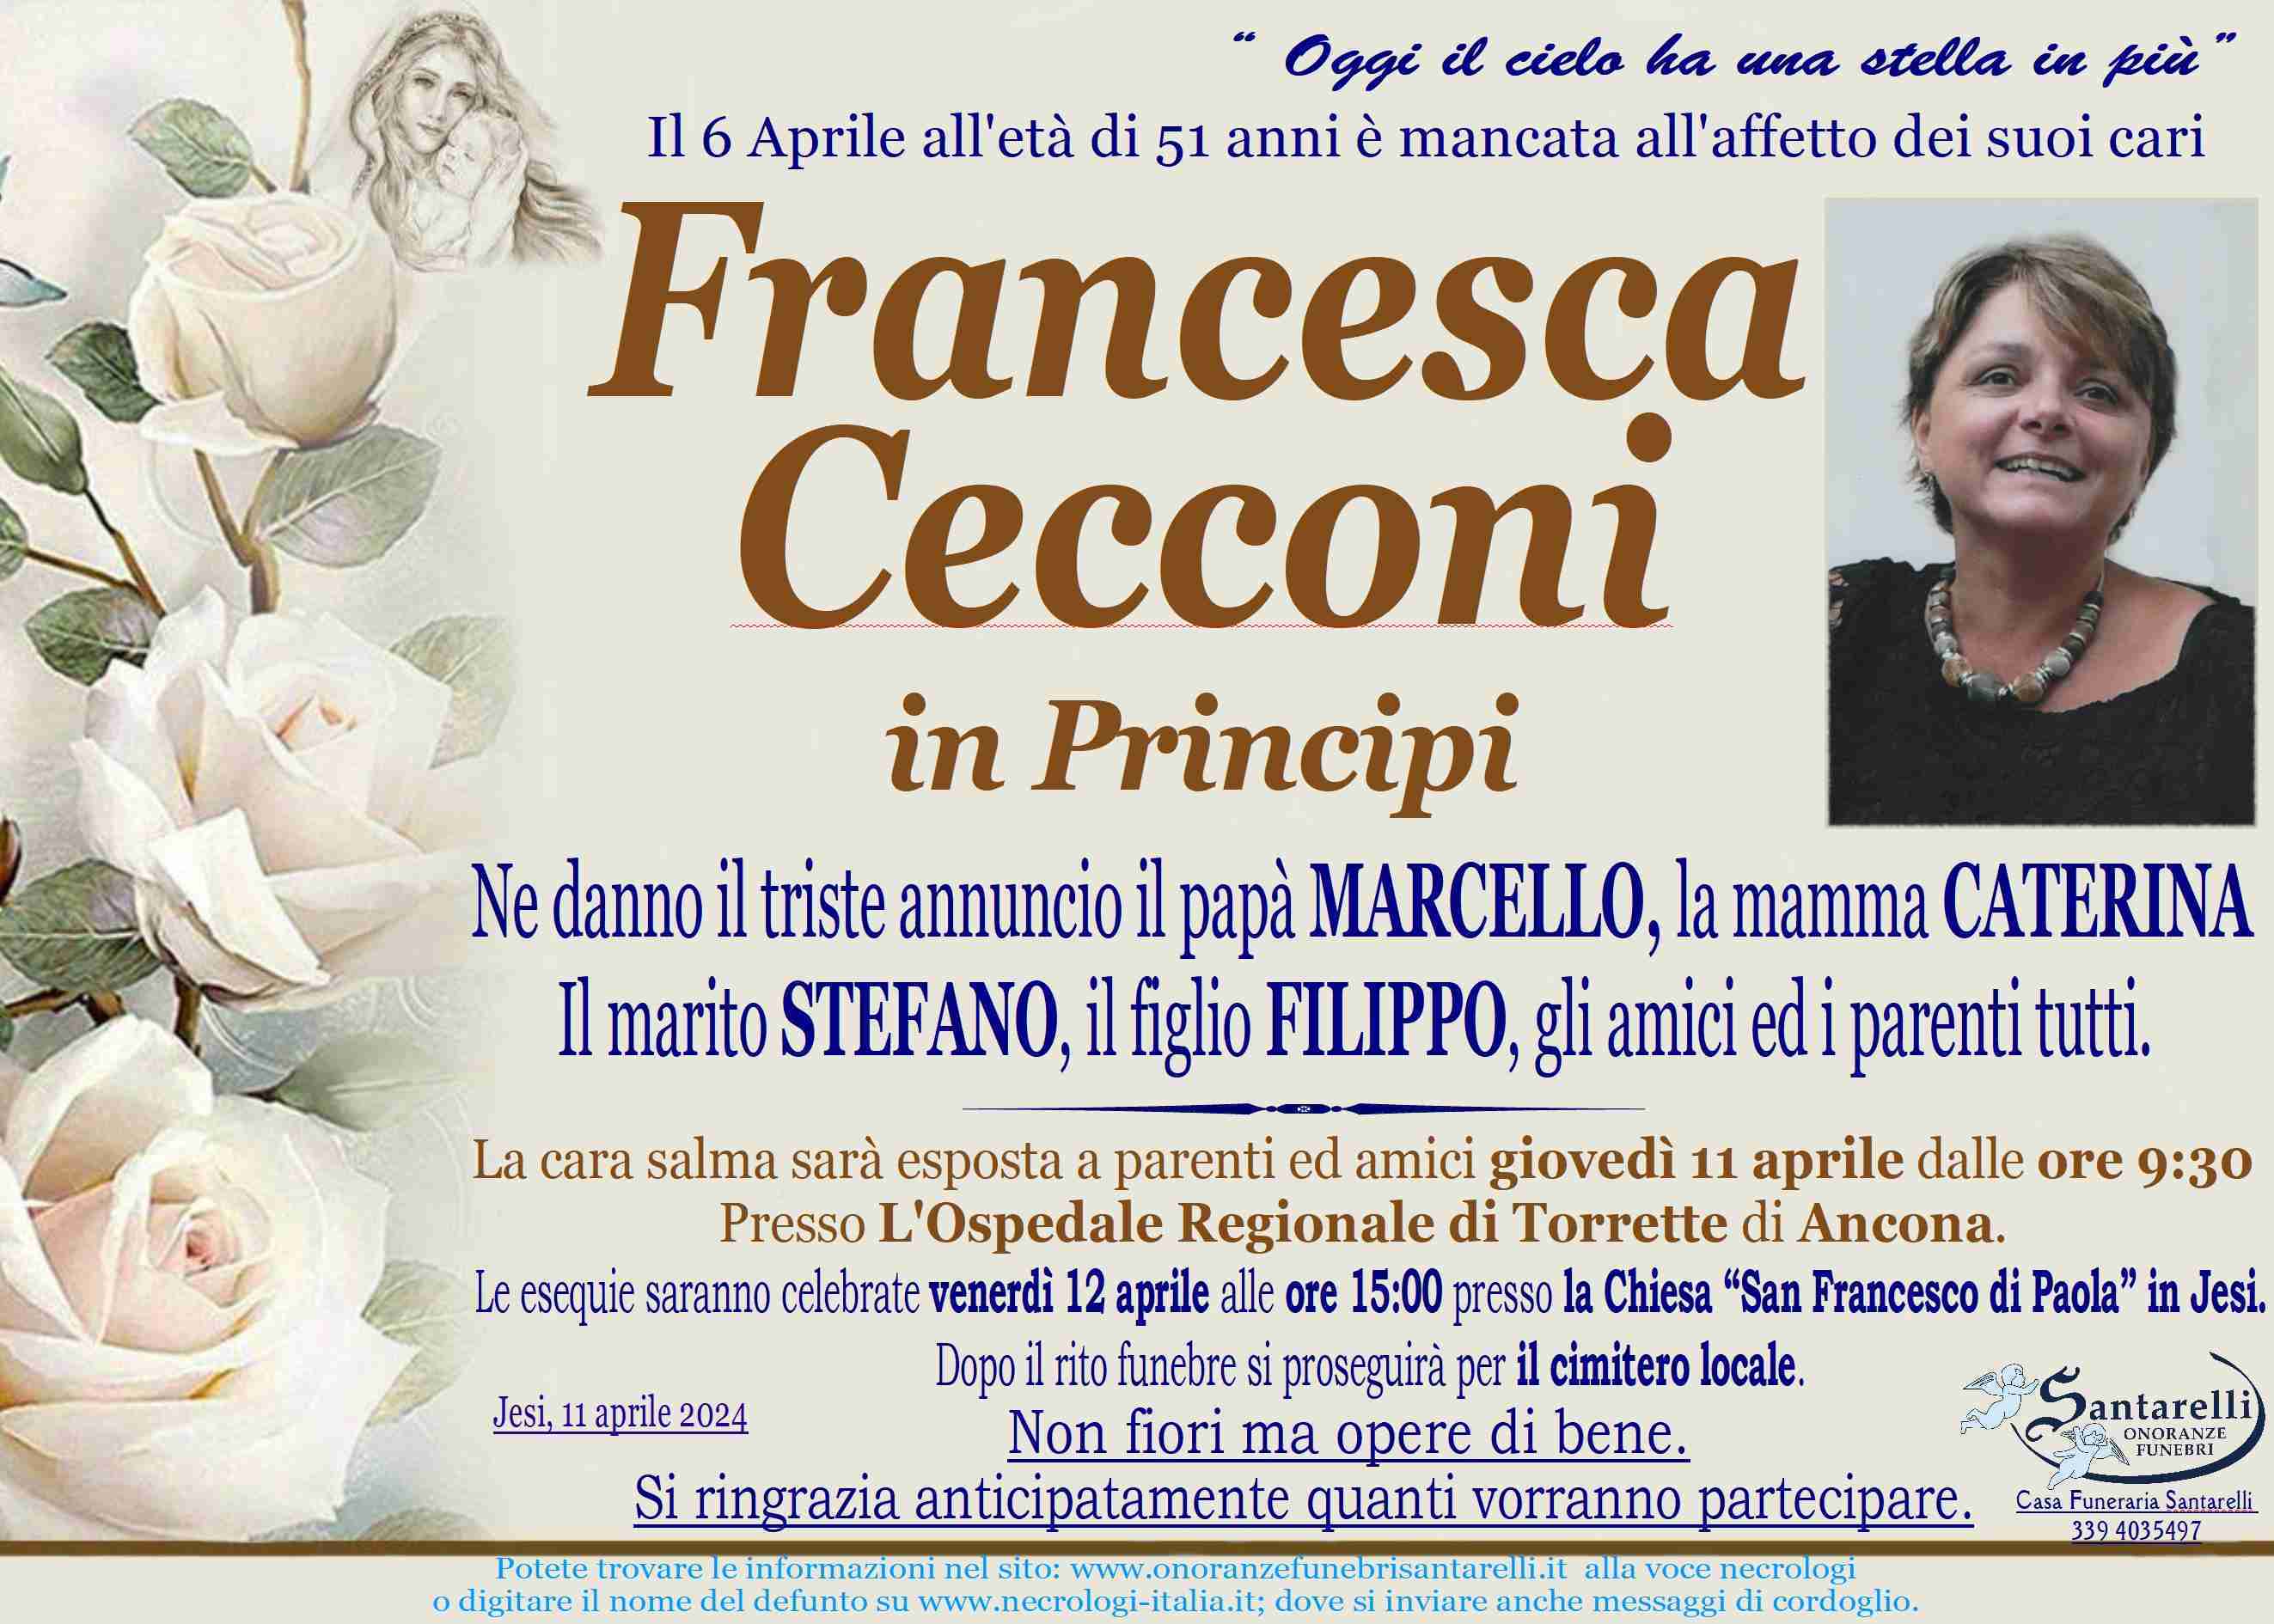 Francesca Cecconi